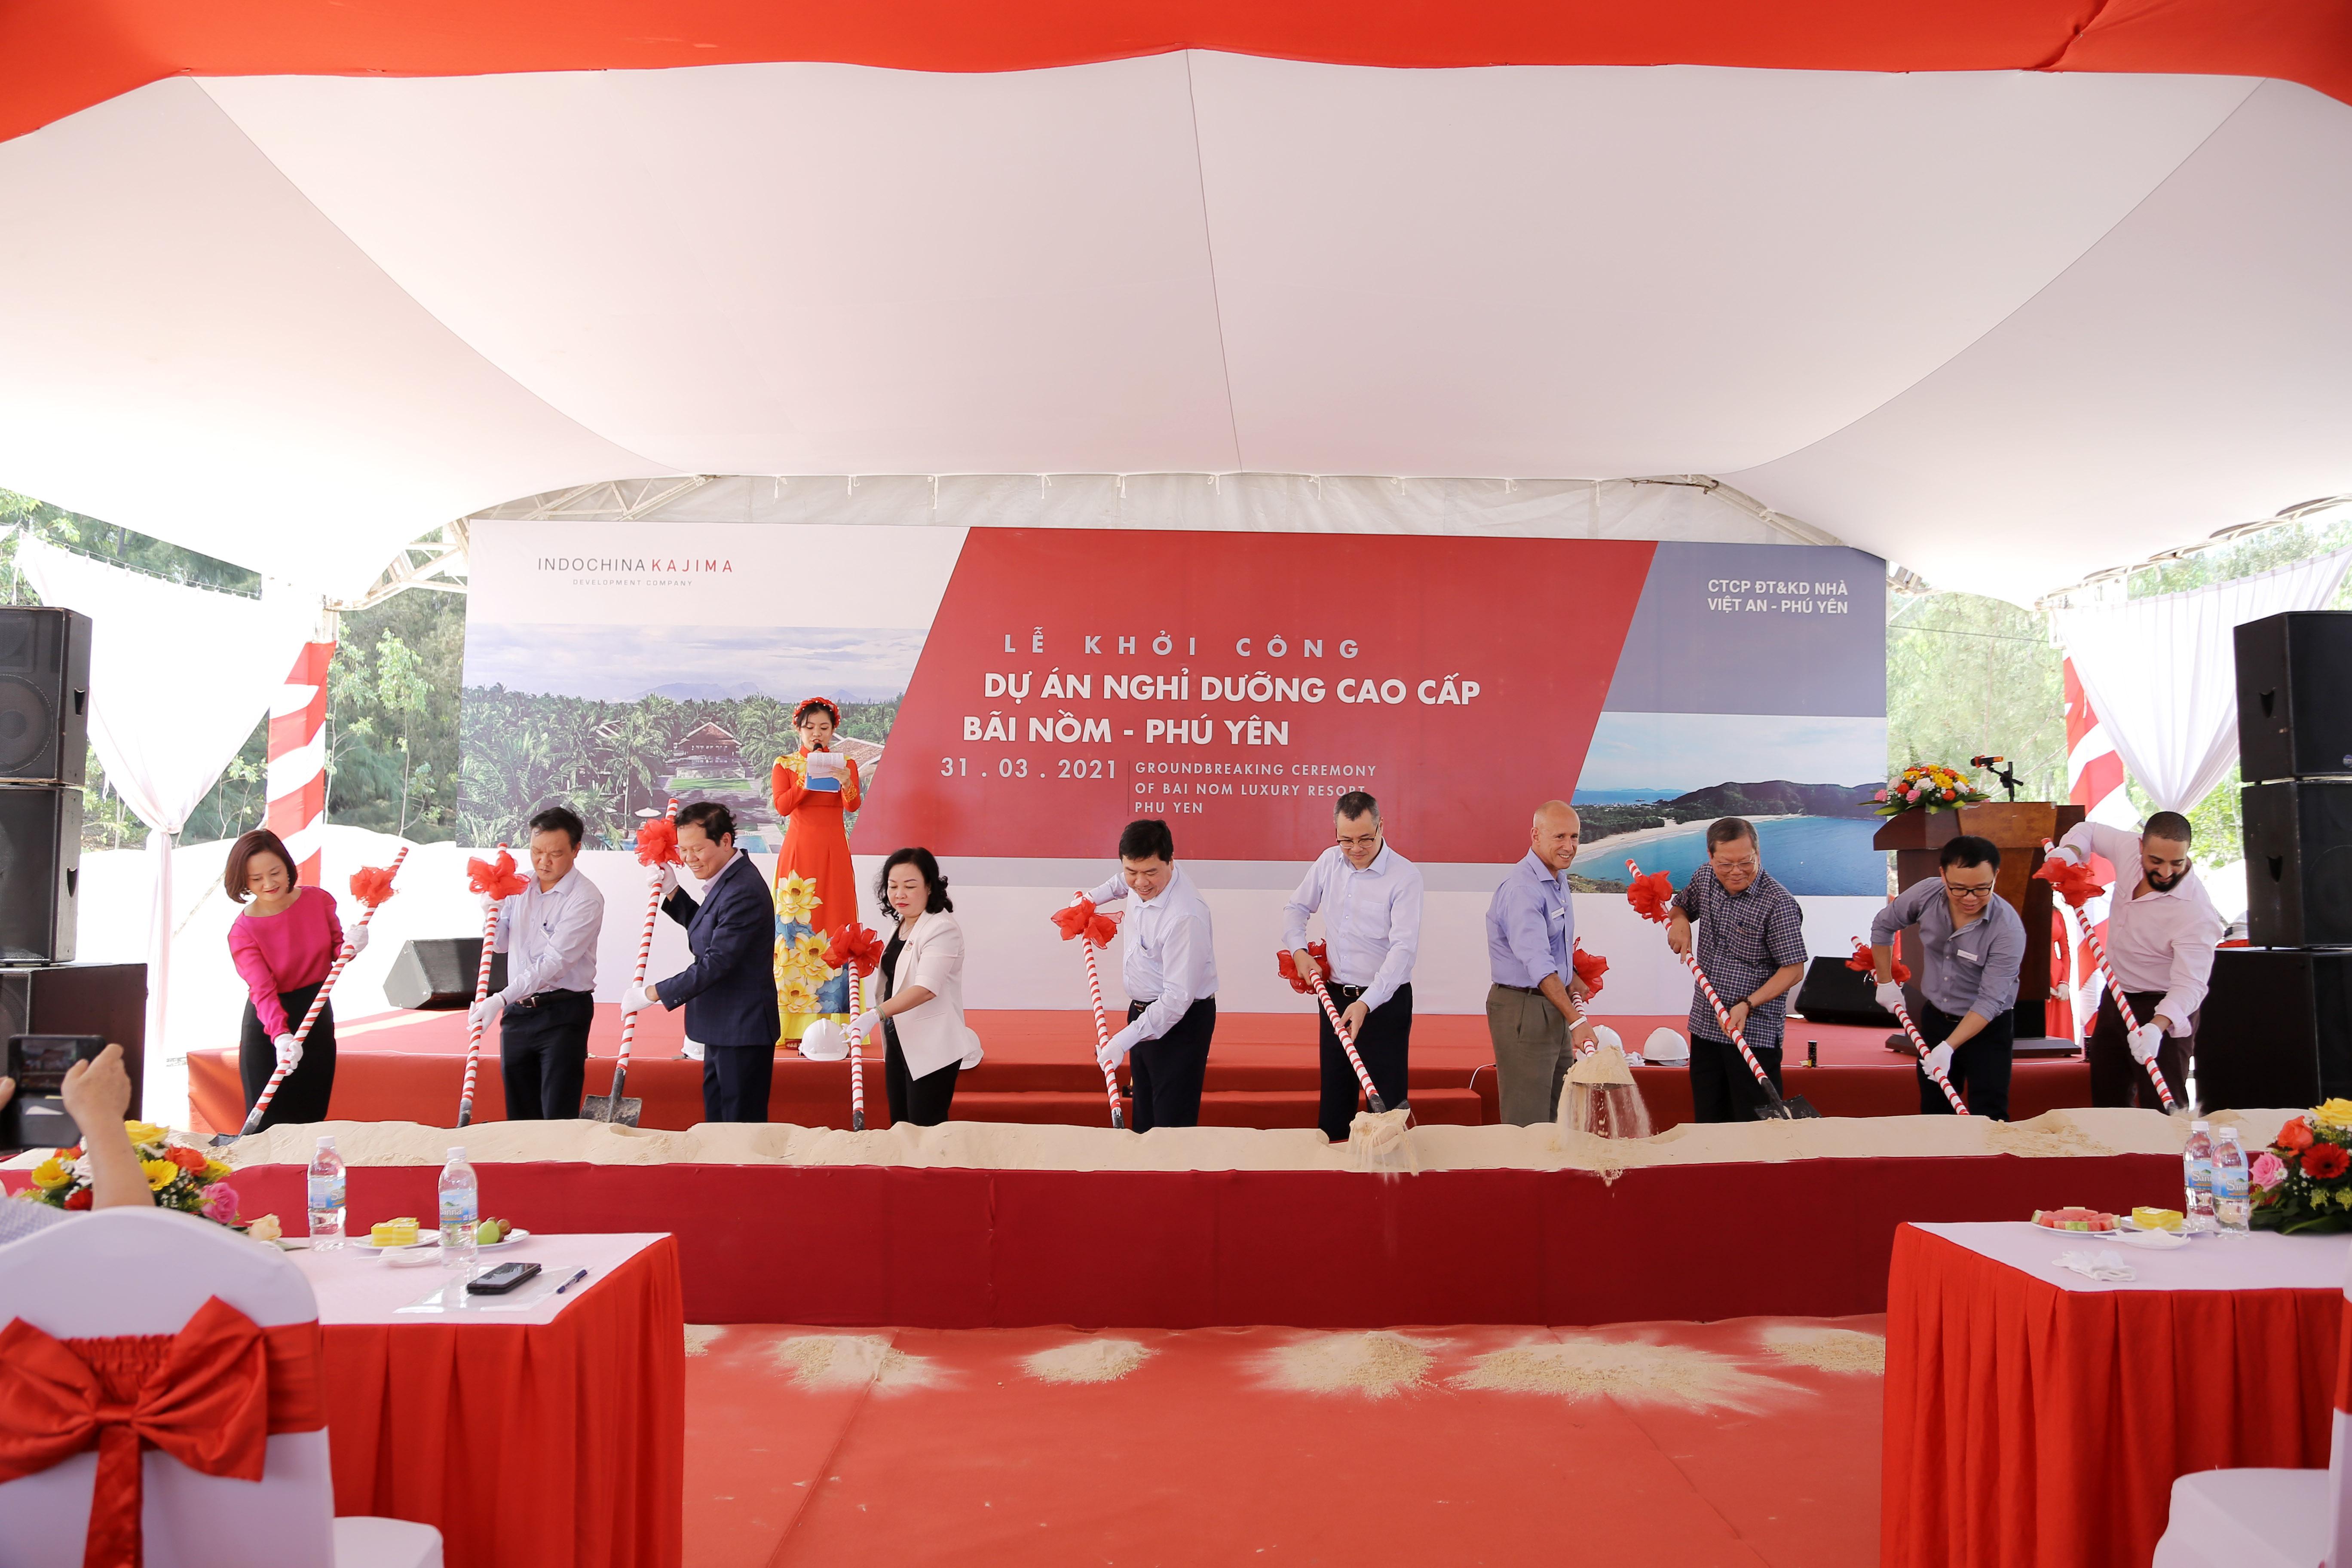 Indochina Kajima khởi công dự án nghỉ dưỡng cao cấp Bãi Nồm